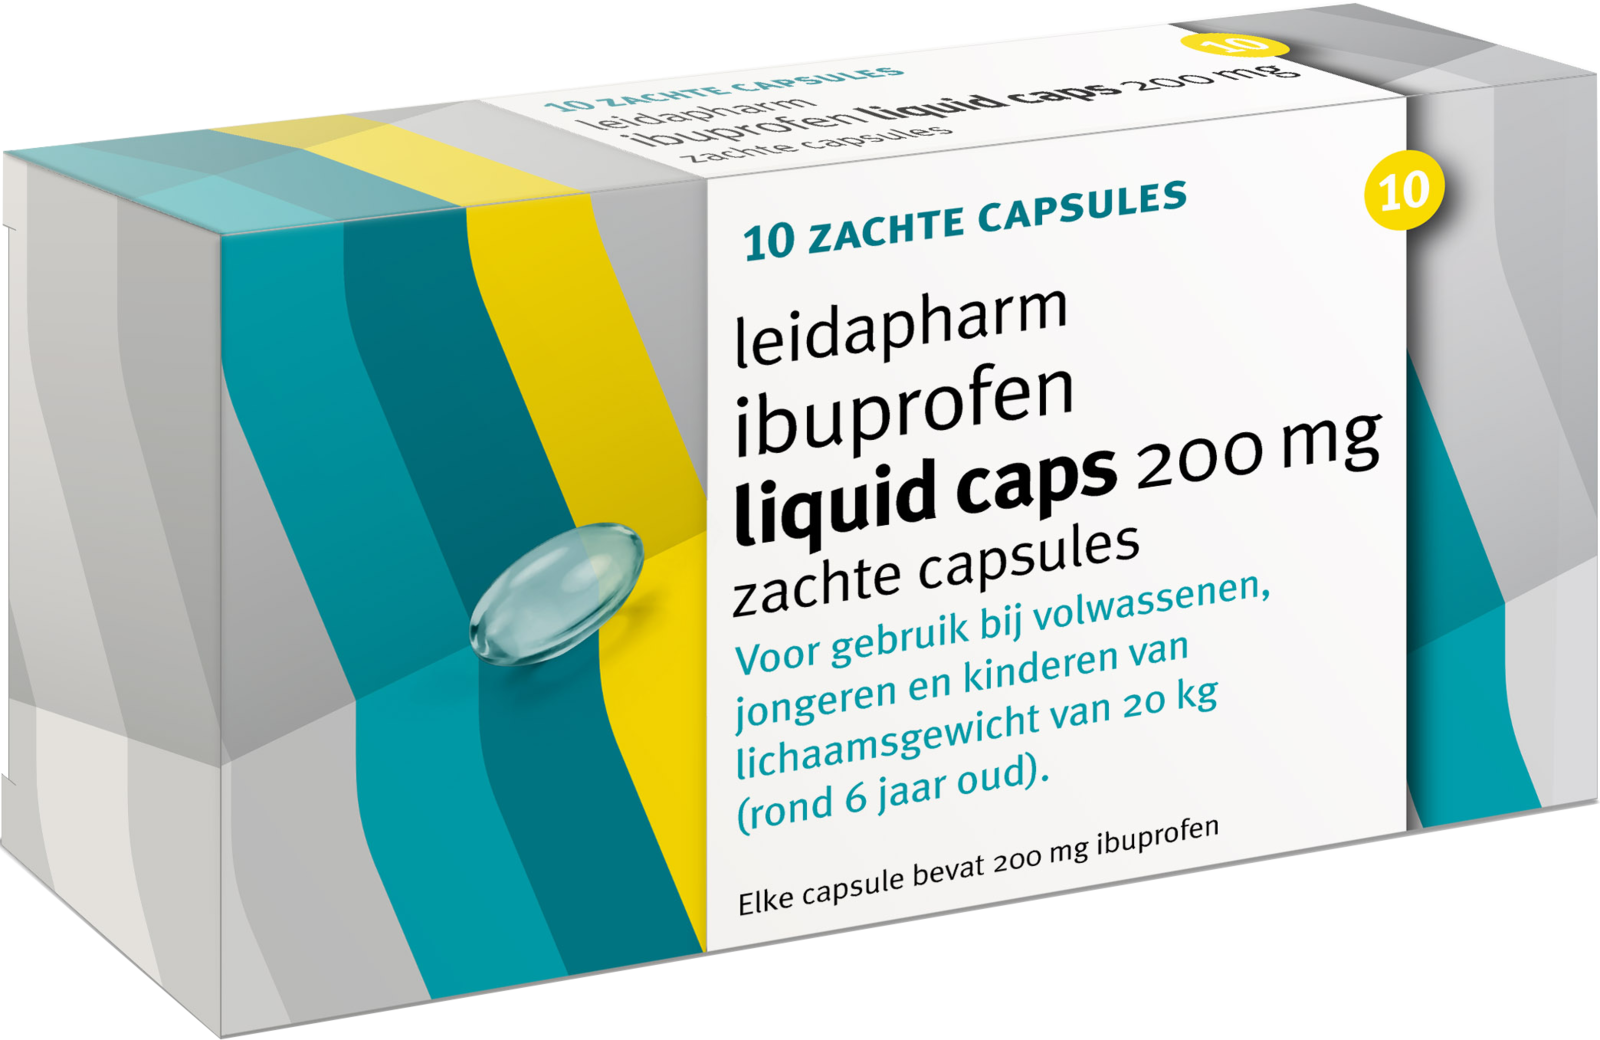 Leidapharm Ibuprofen 200mg Liquid Capsules